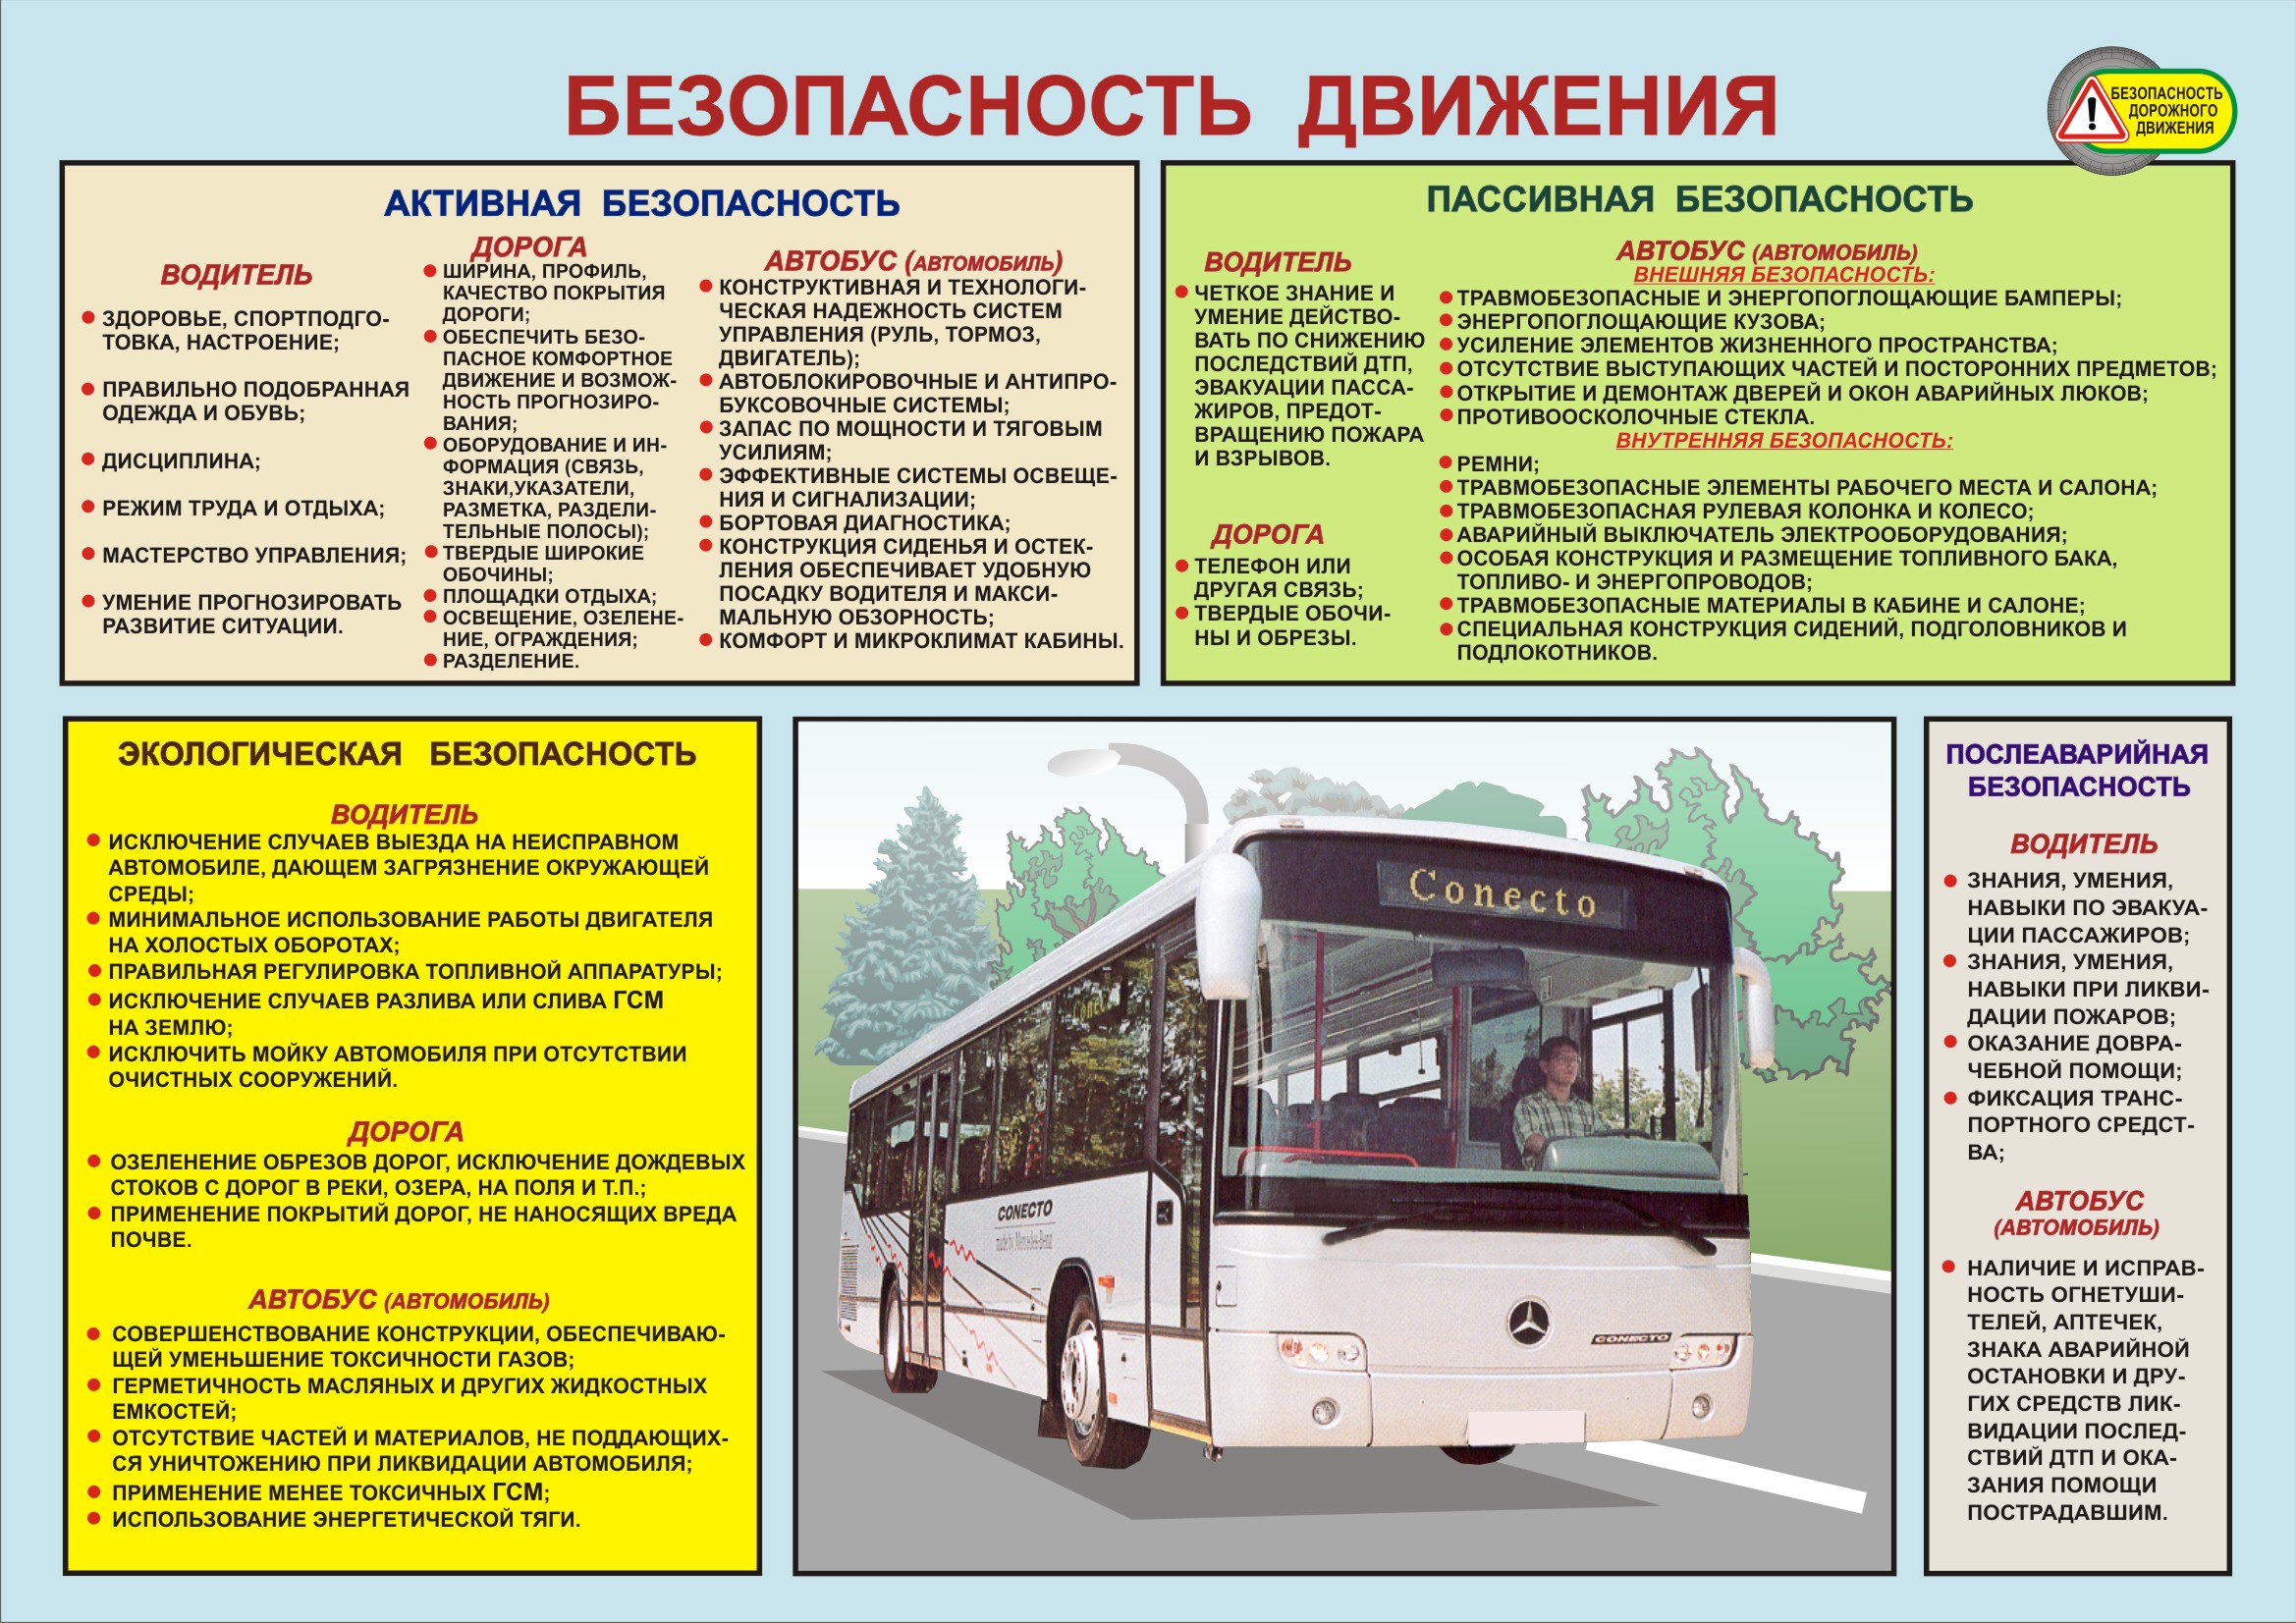 Организация работы автобусов